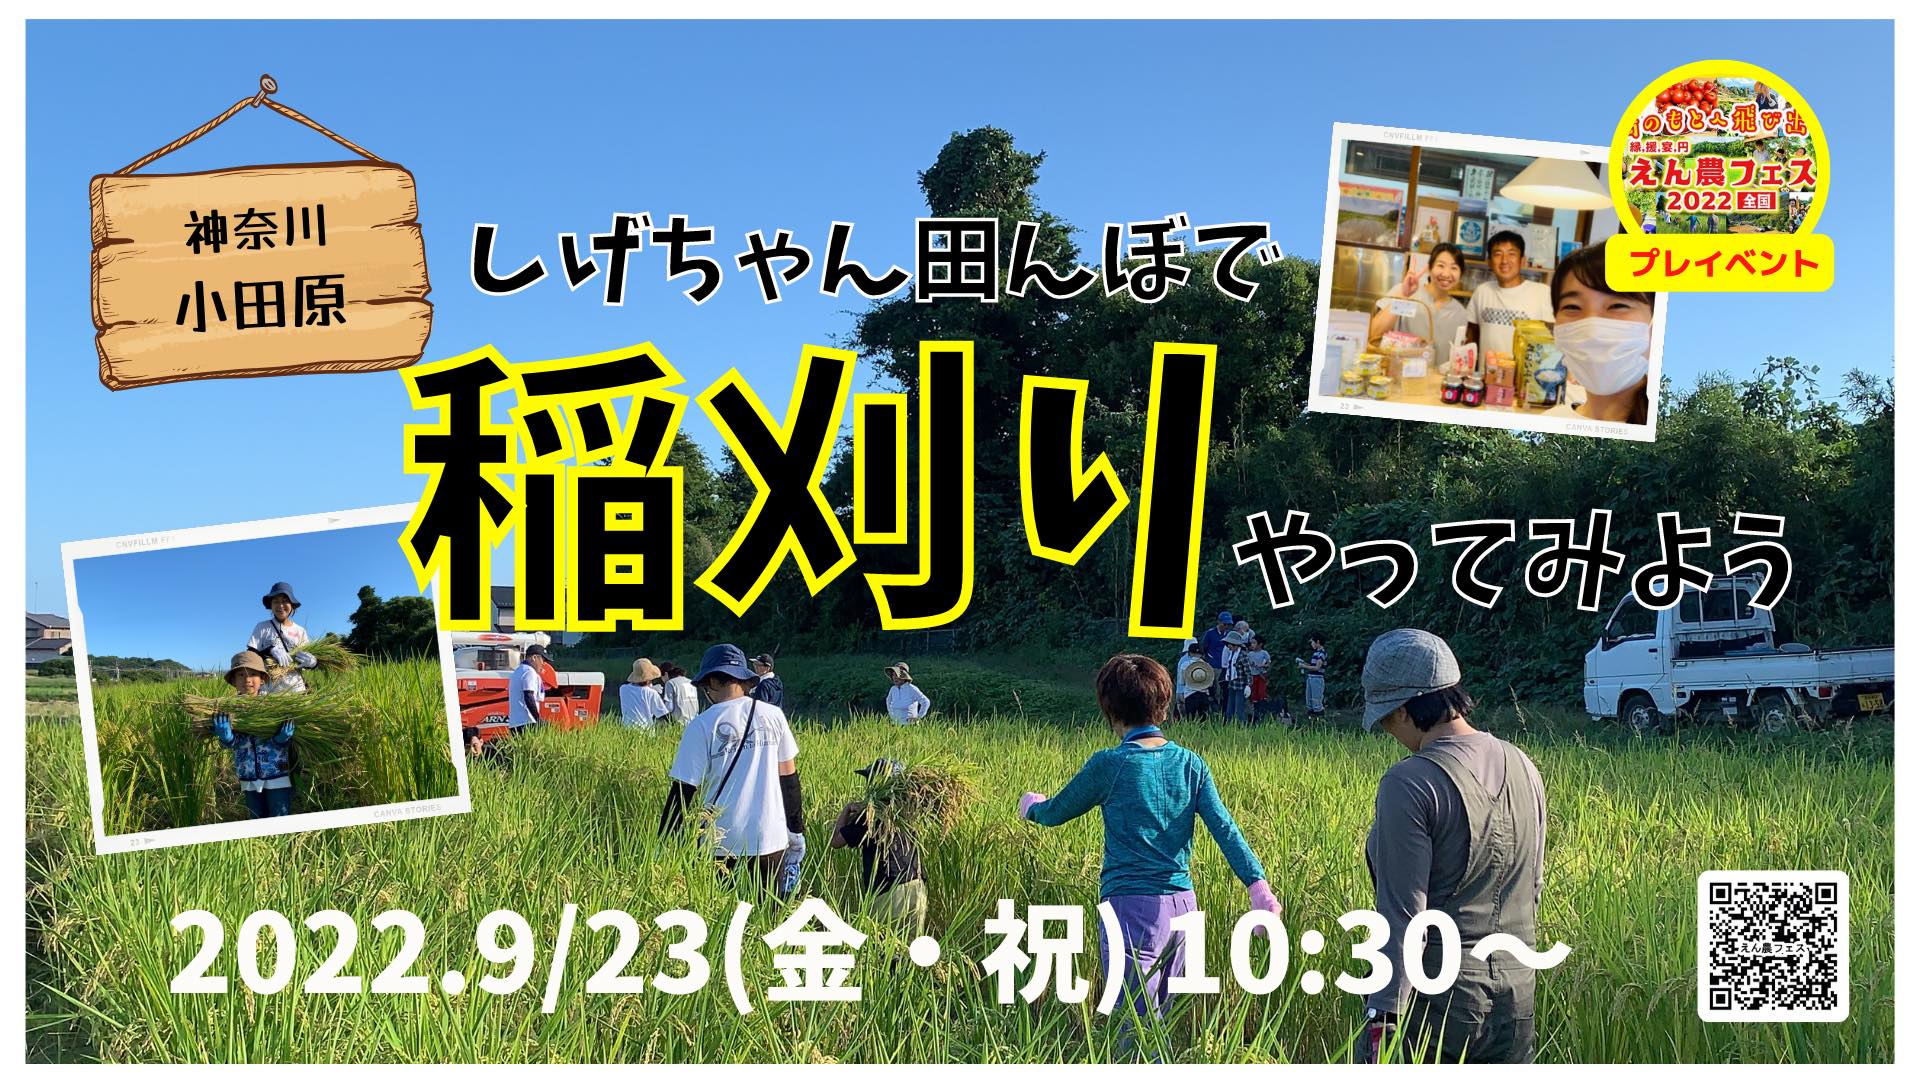 9月23日㈮祝日に稲刈り🌾イベントを開催します。